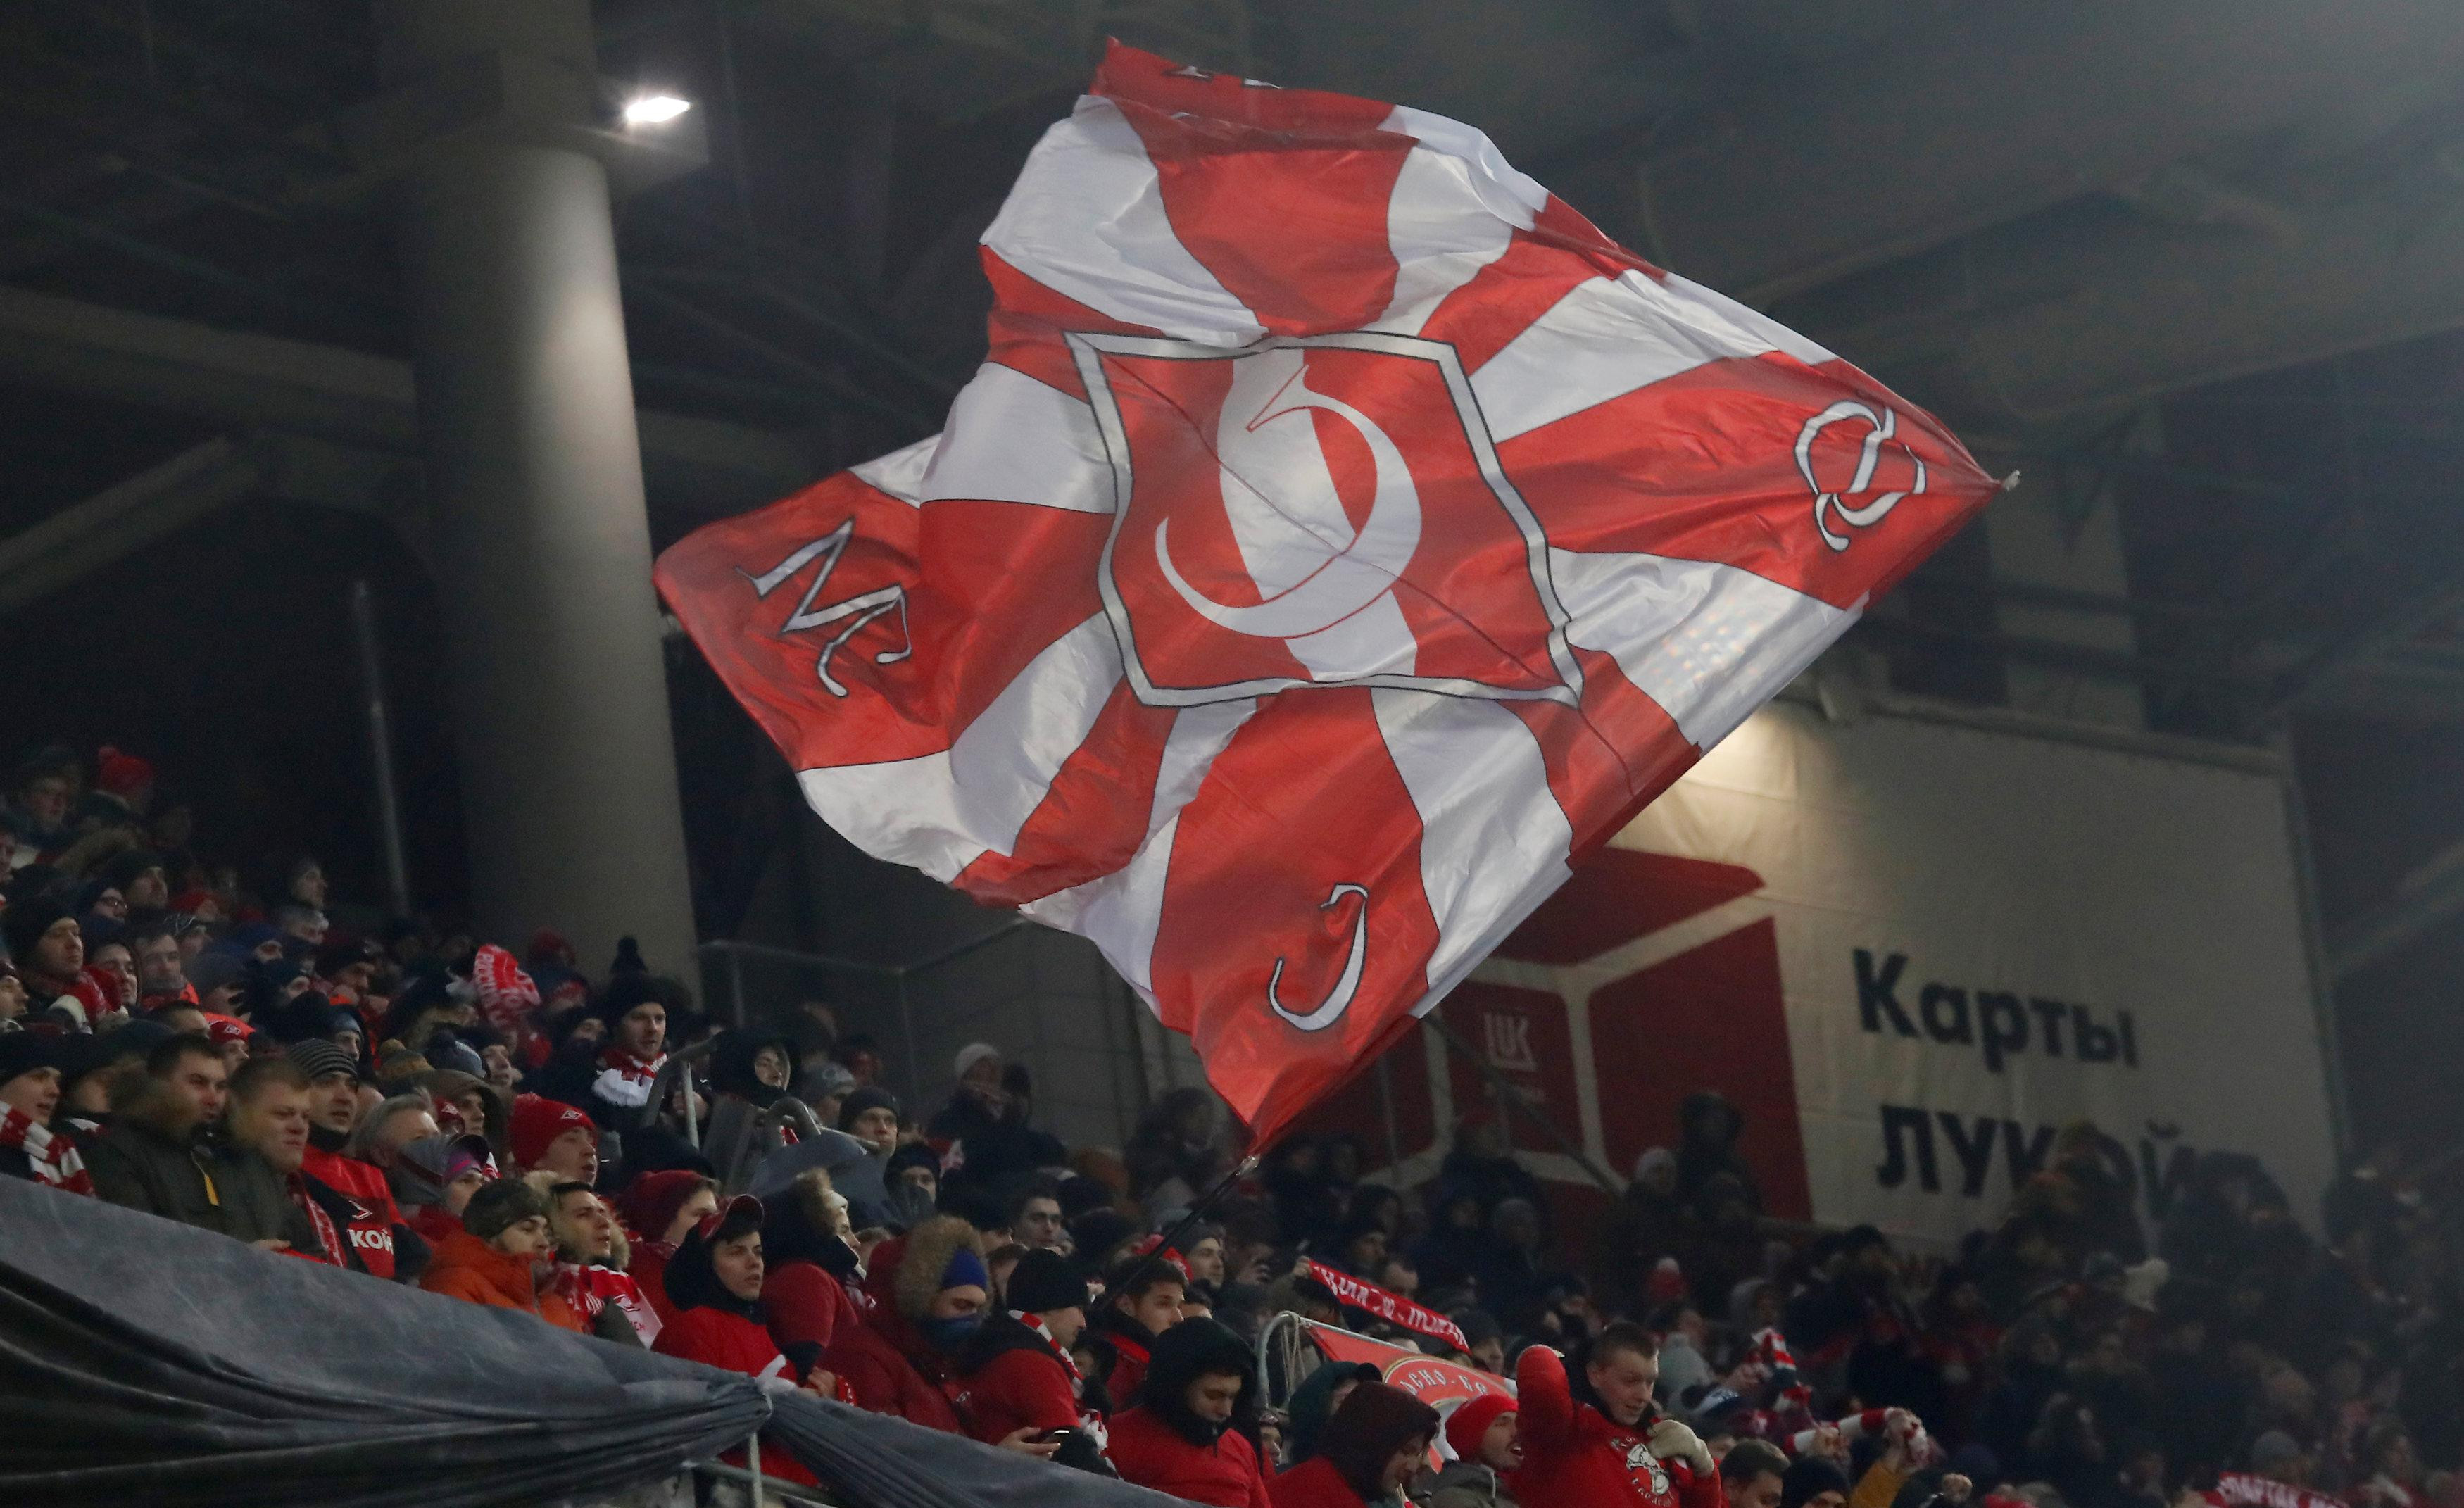 UEFA STALA NA STRANU RUSA! Kapiten Spartaka nije rasista!